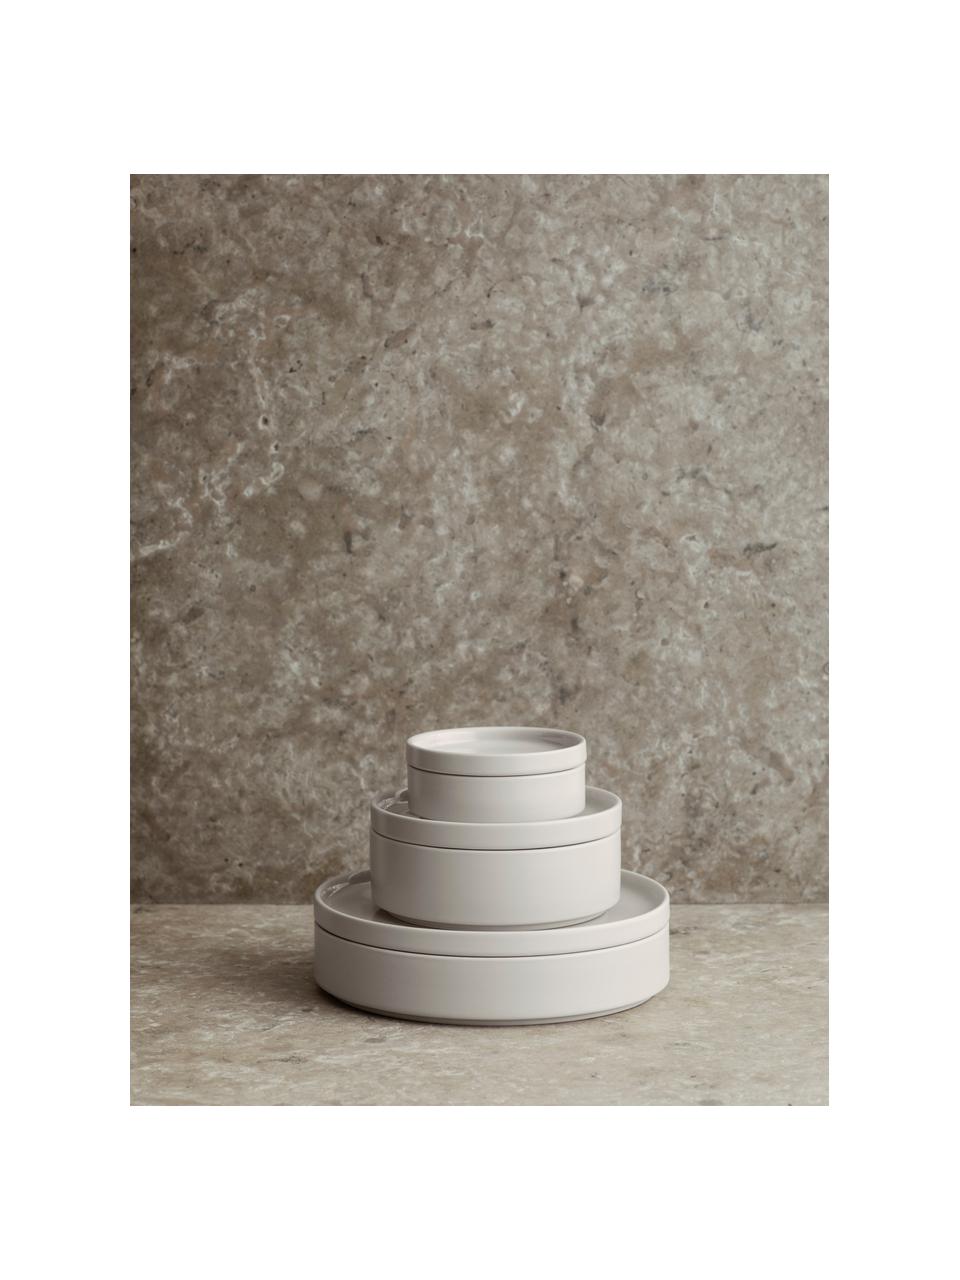 Schälchen Pilar in matt/glänzend, 4 Stück, Keramik, Cremeweiß, Ø 14 x H 5 cm